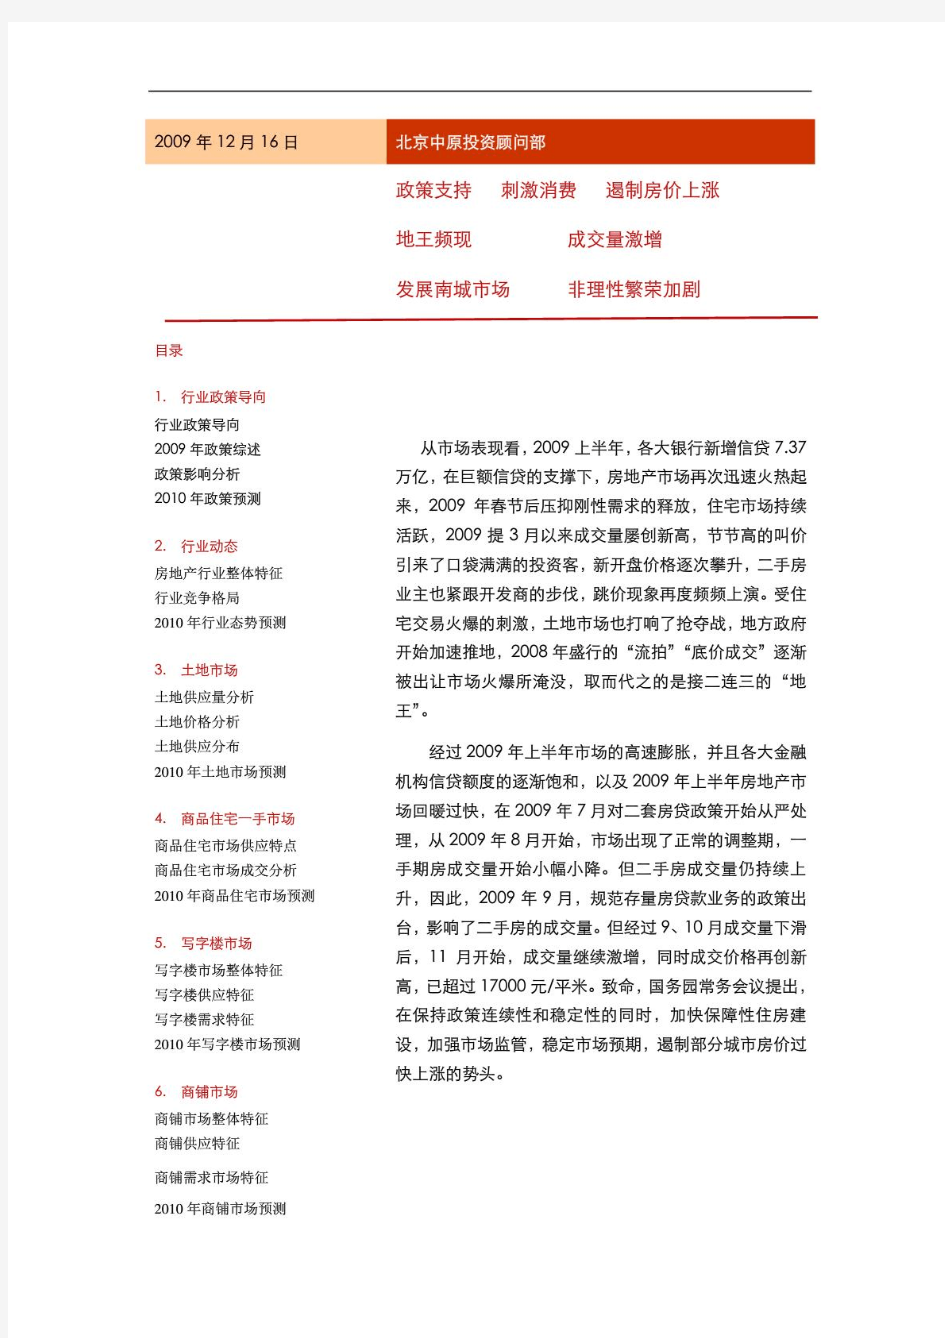 2014年北京房地产市场回顾及2014年预测报告中原